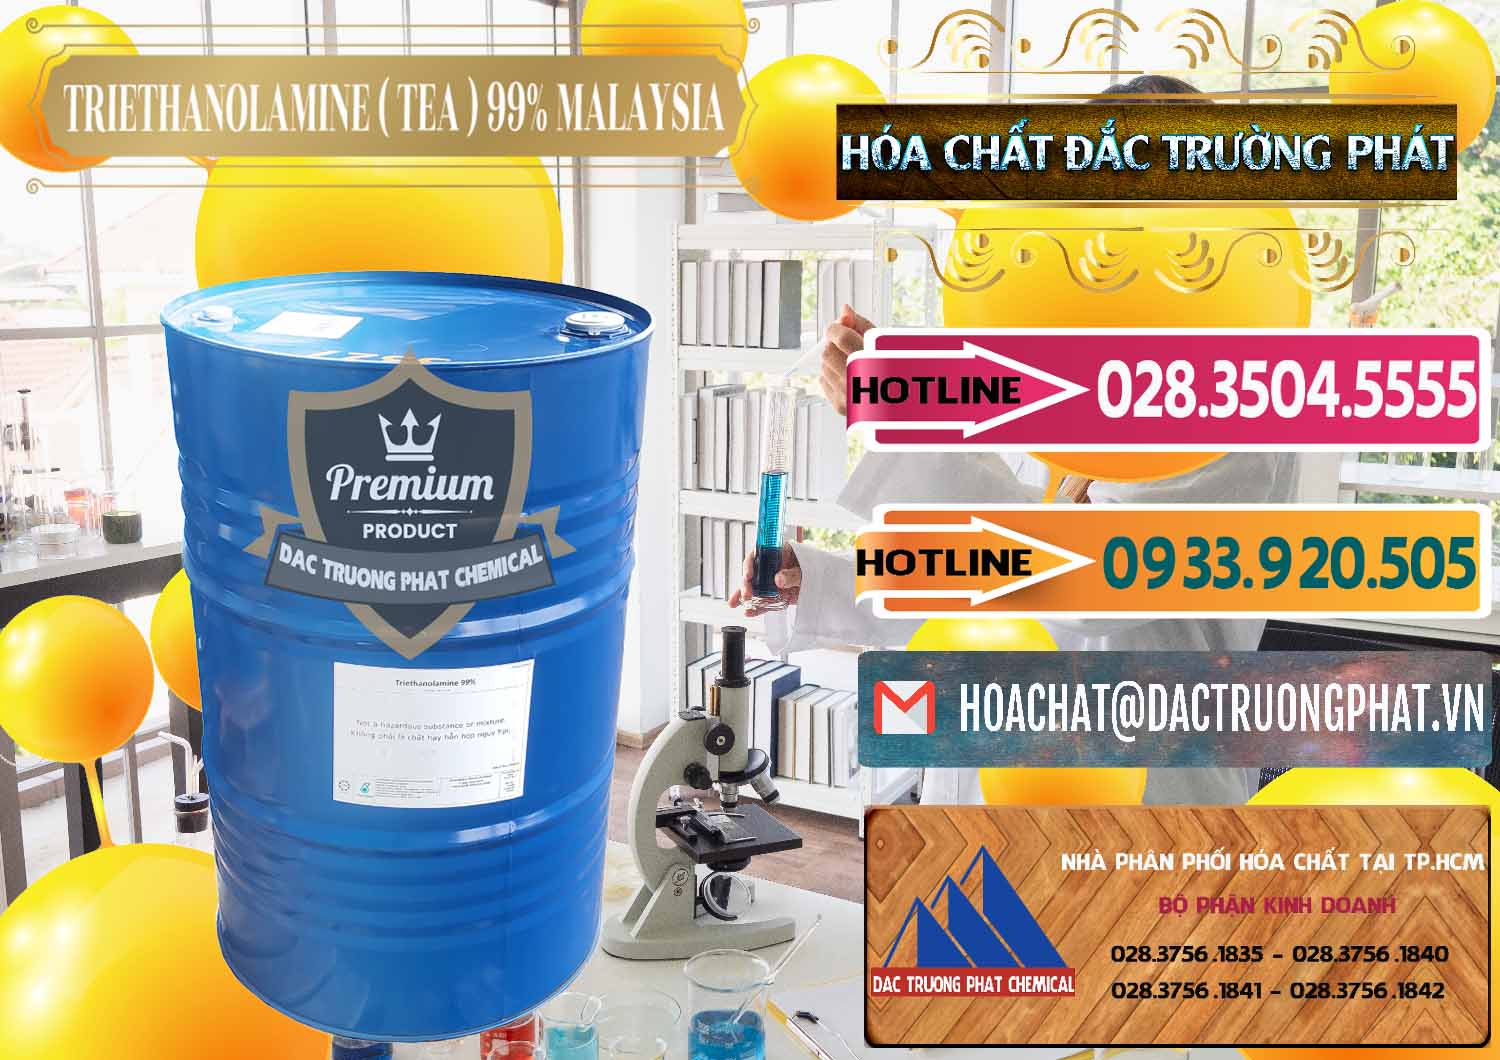 Cty cung cấp & bán TEA - Triethanolamine 99% Mã Lai Malaysia - 0323 - Chuyên bán và phân phối hóa chất tại TP.HCM - dactruongphat.vn